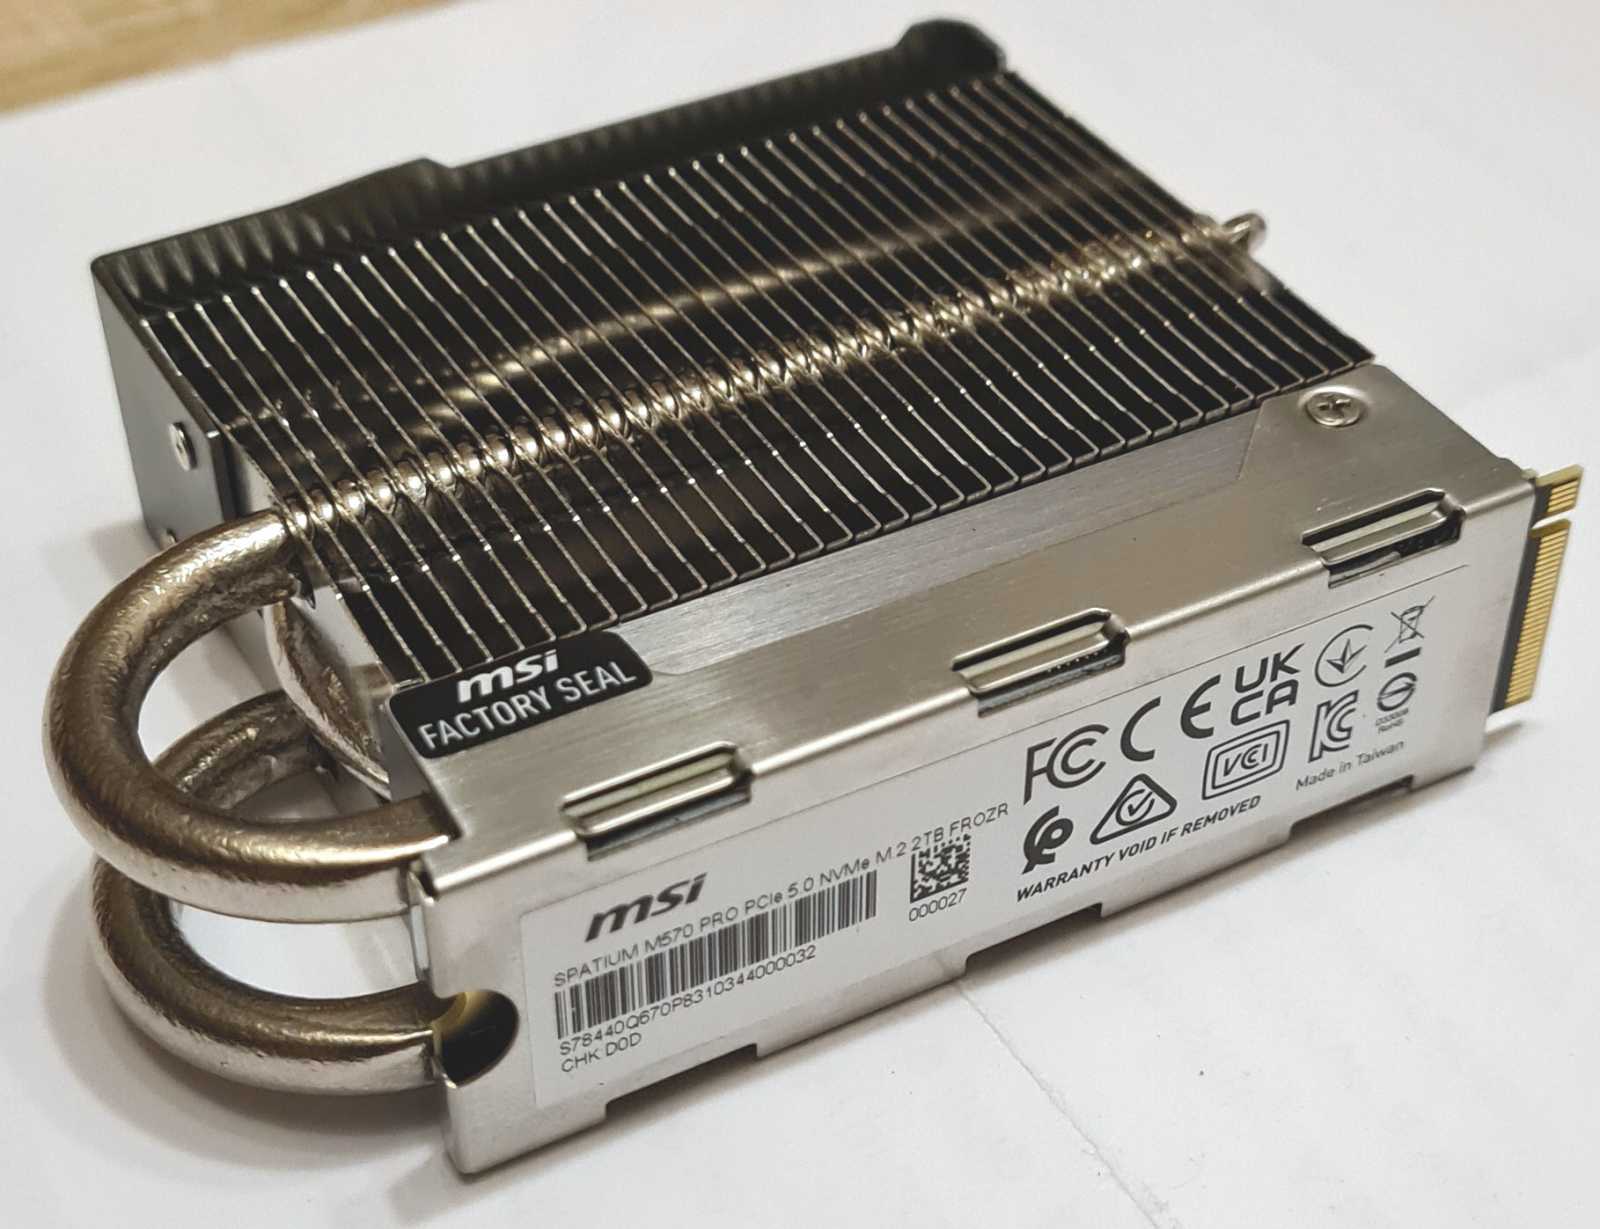 MSI Spatium M570 PRO Frozr: Exkluzivní SSD s monstrózním chladičem pro PCIe 5.0 NVMe 